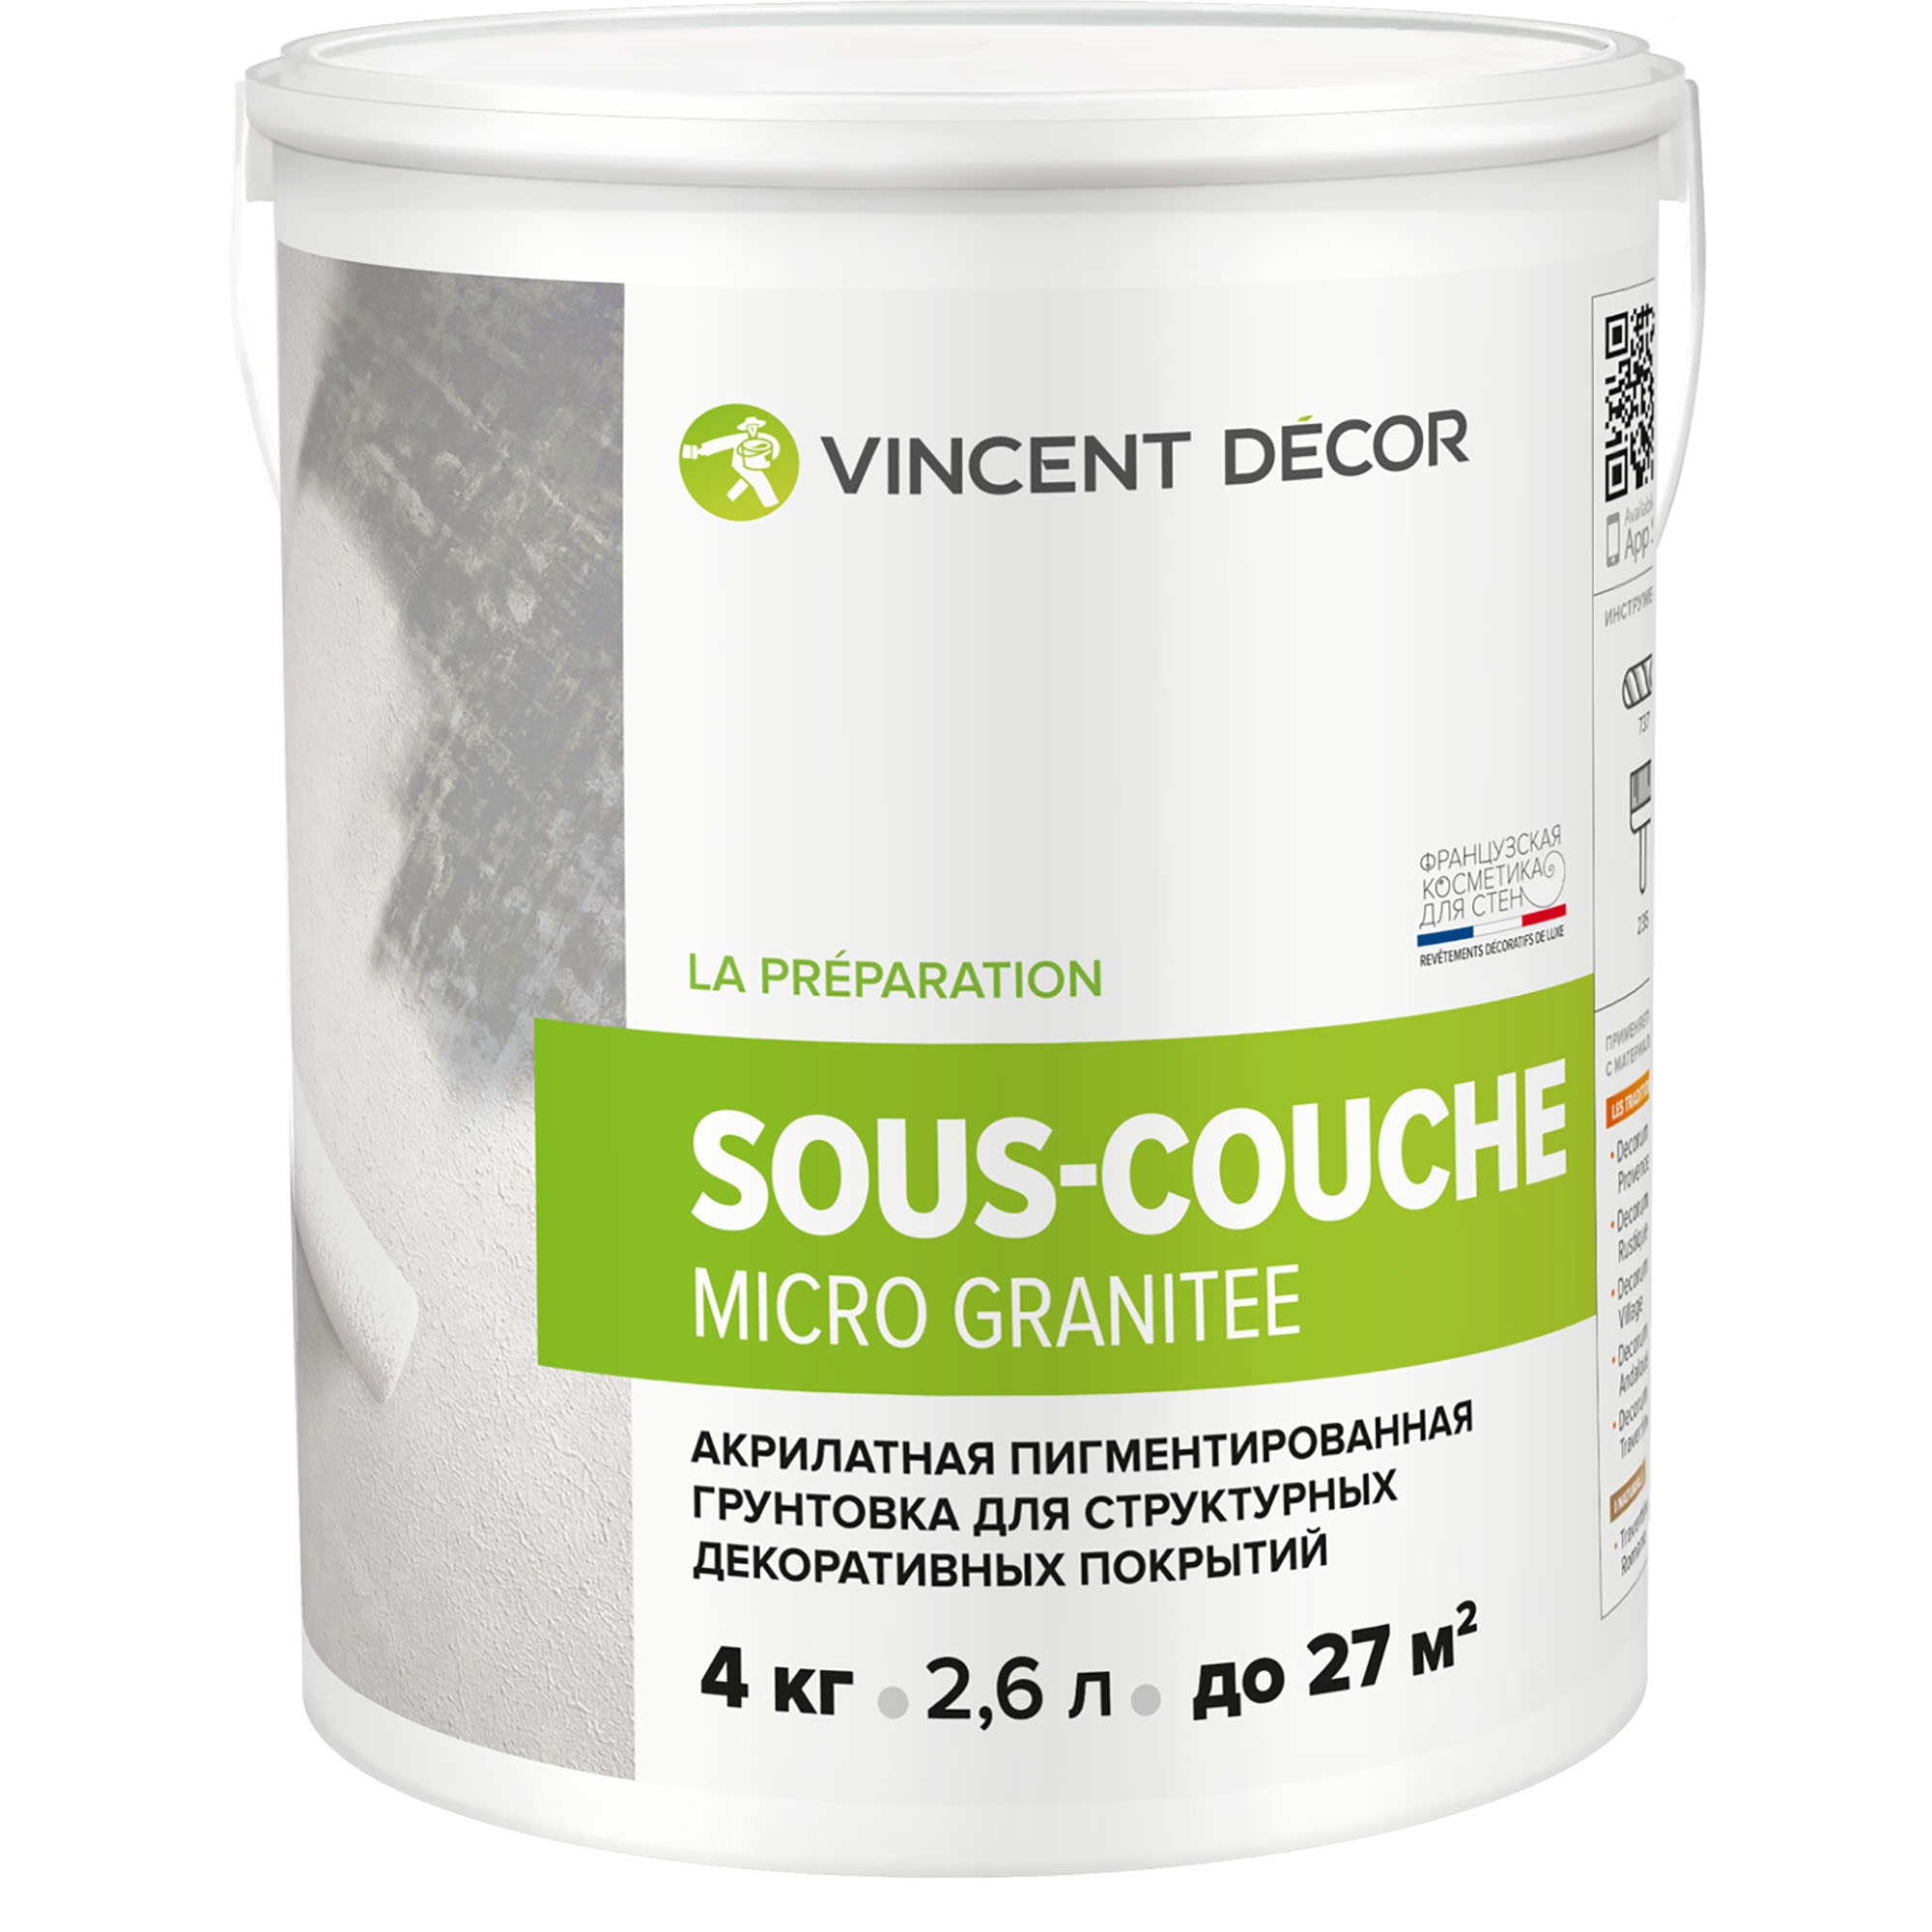 фото Грунтовка для структурных декоративных покрытий vincent decor sous-couсhe microgranite 4 кг